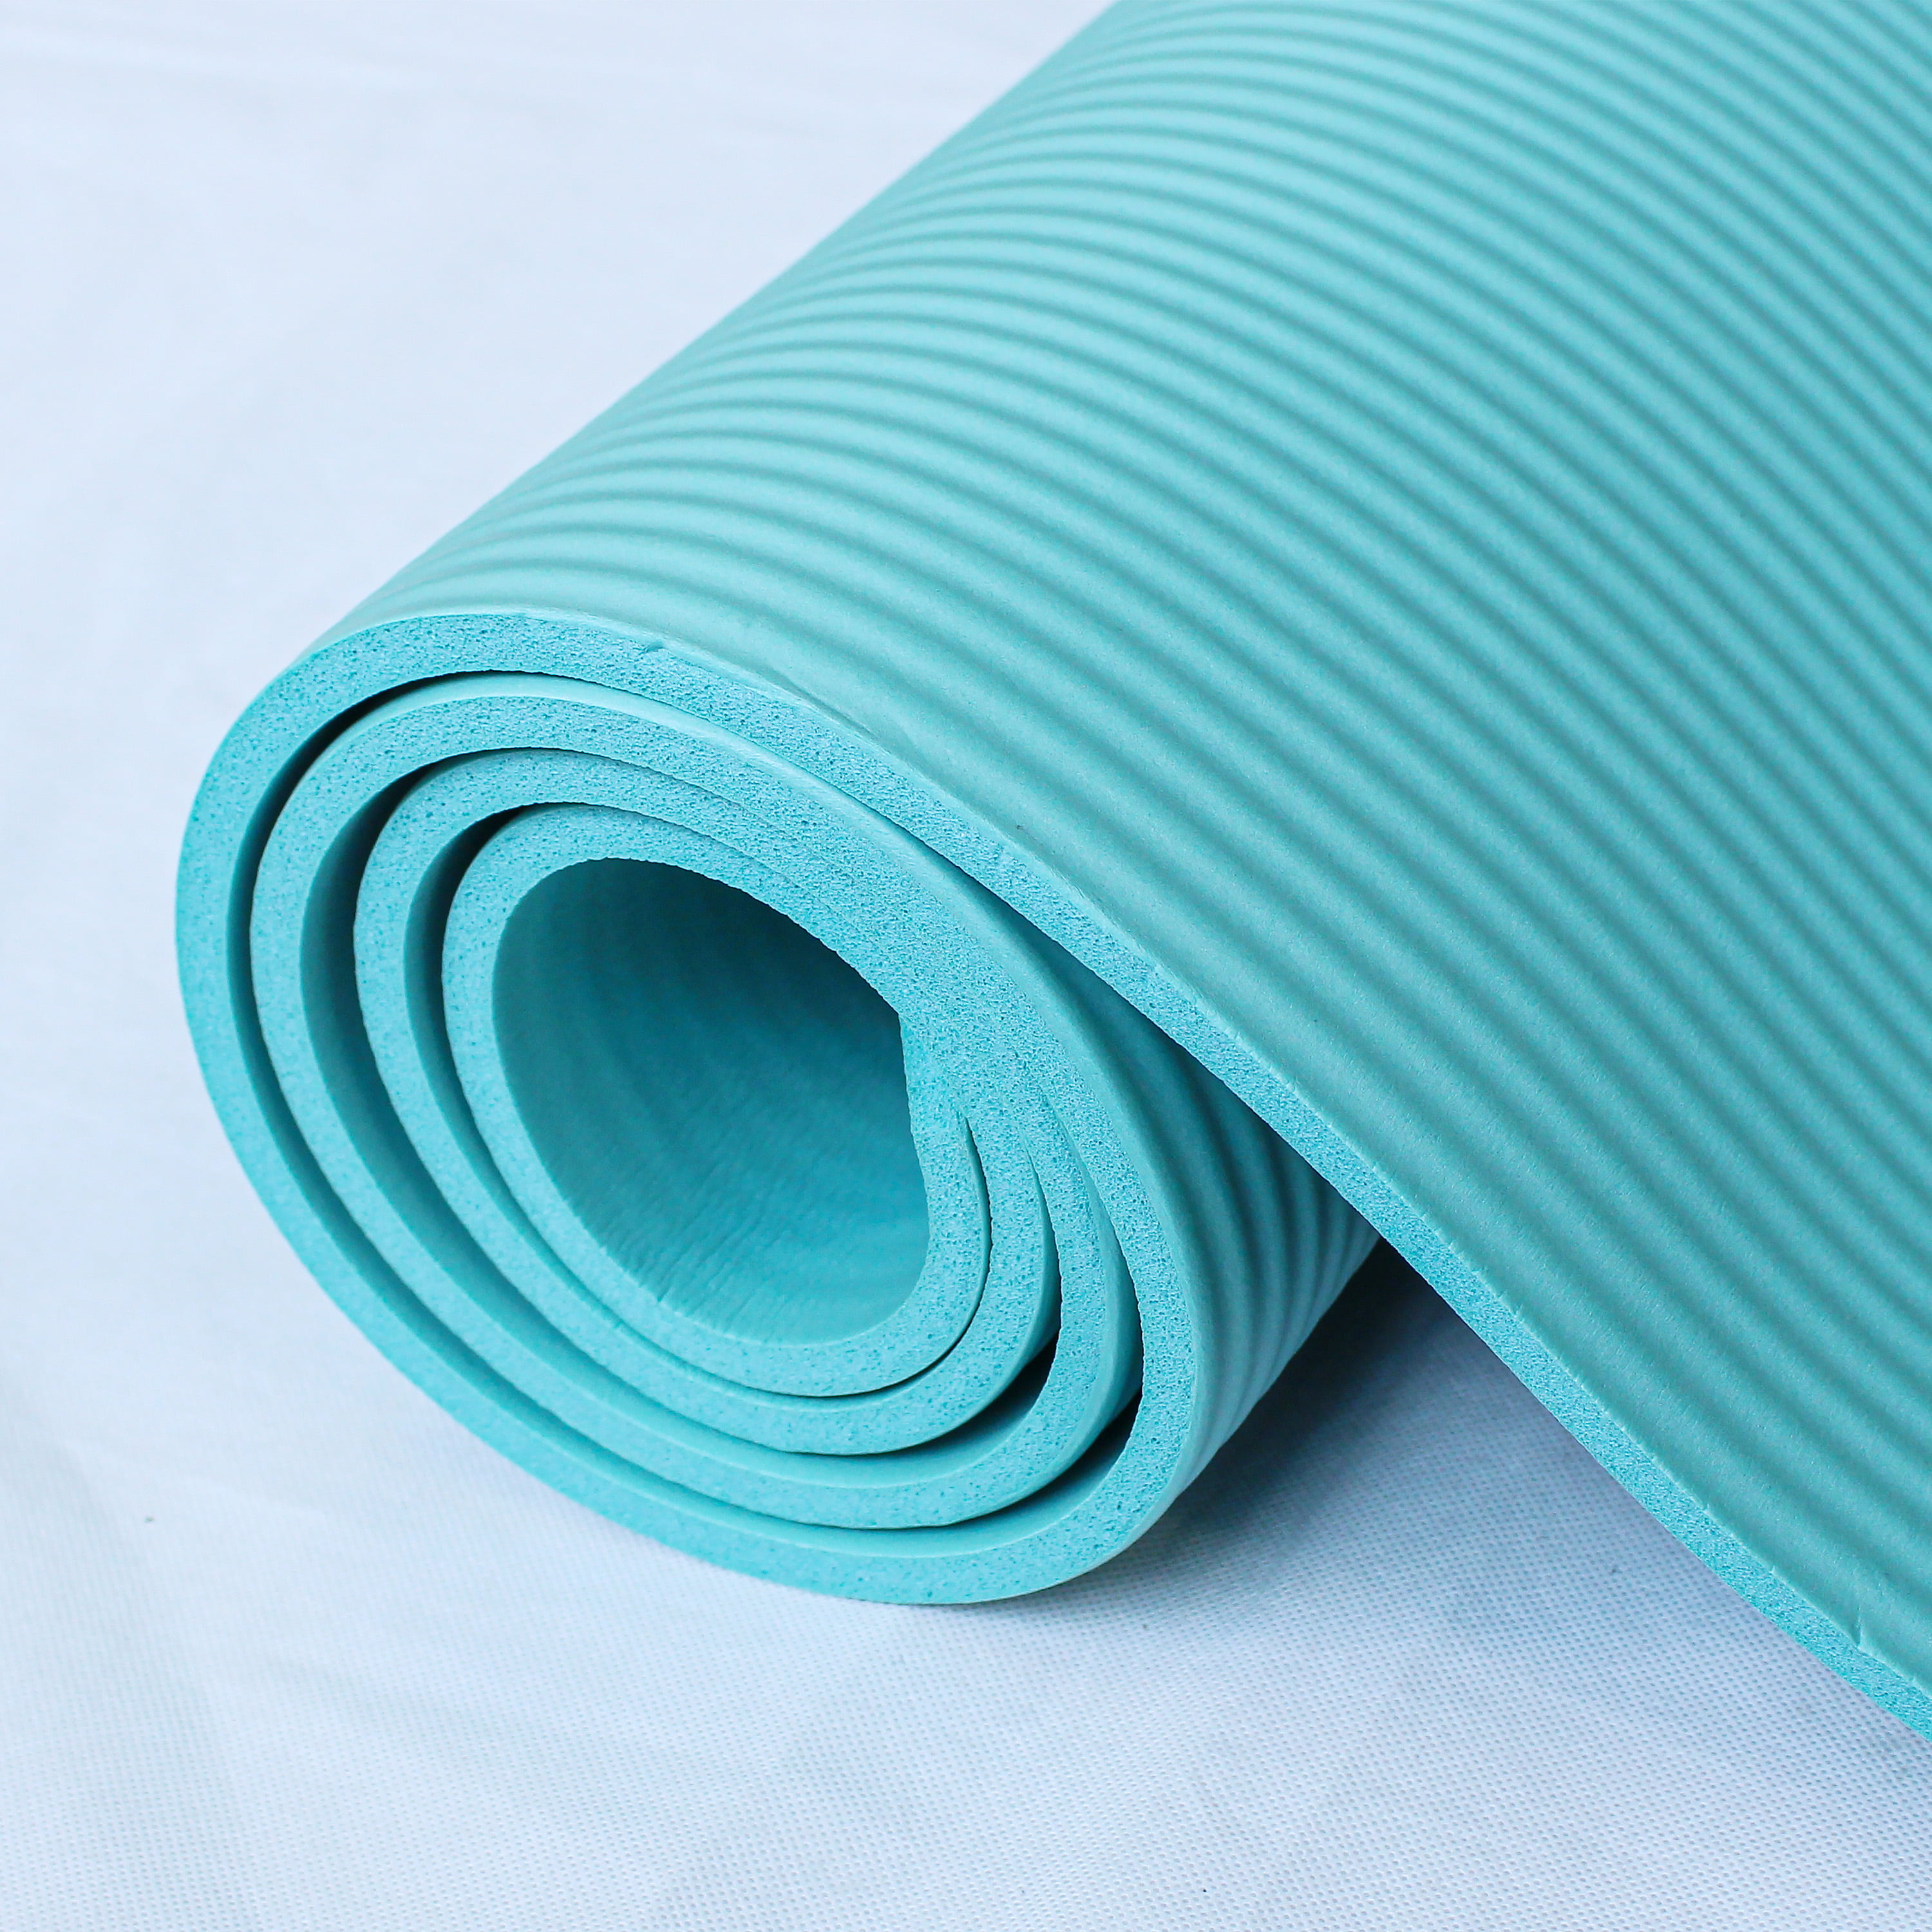 RYTMAT Extra Large Yoga Mat 78x51 10mm Thick Foam Exercise Mats Floor  Pilates Workout Matt Purple